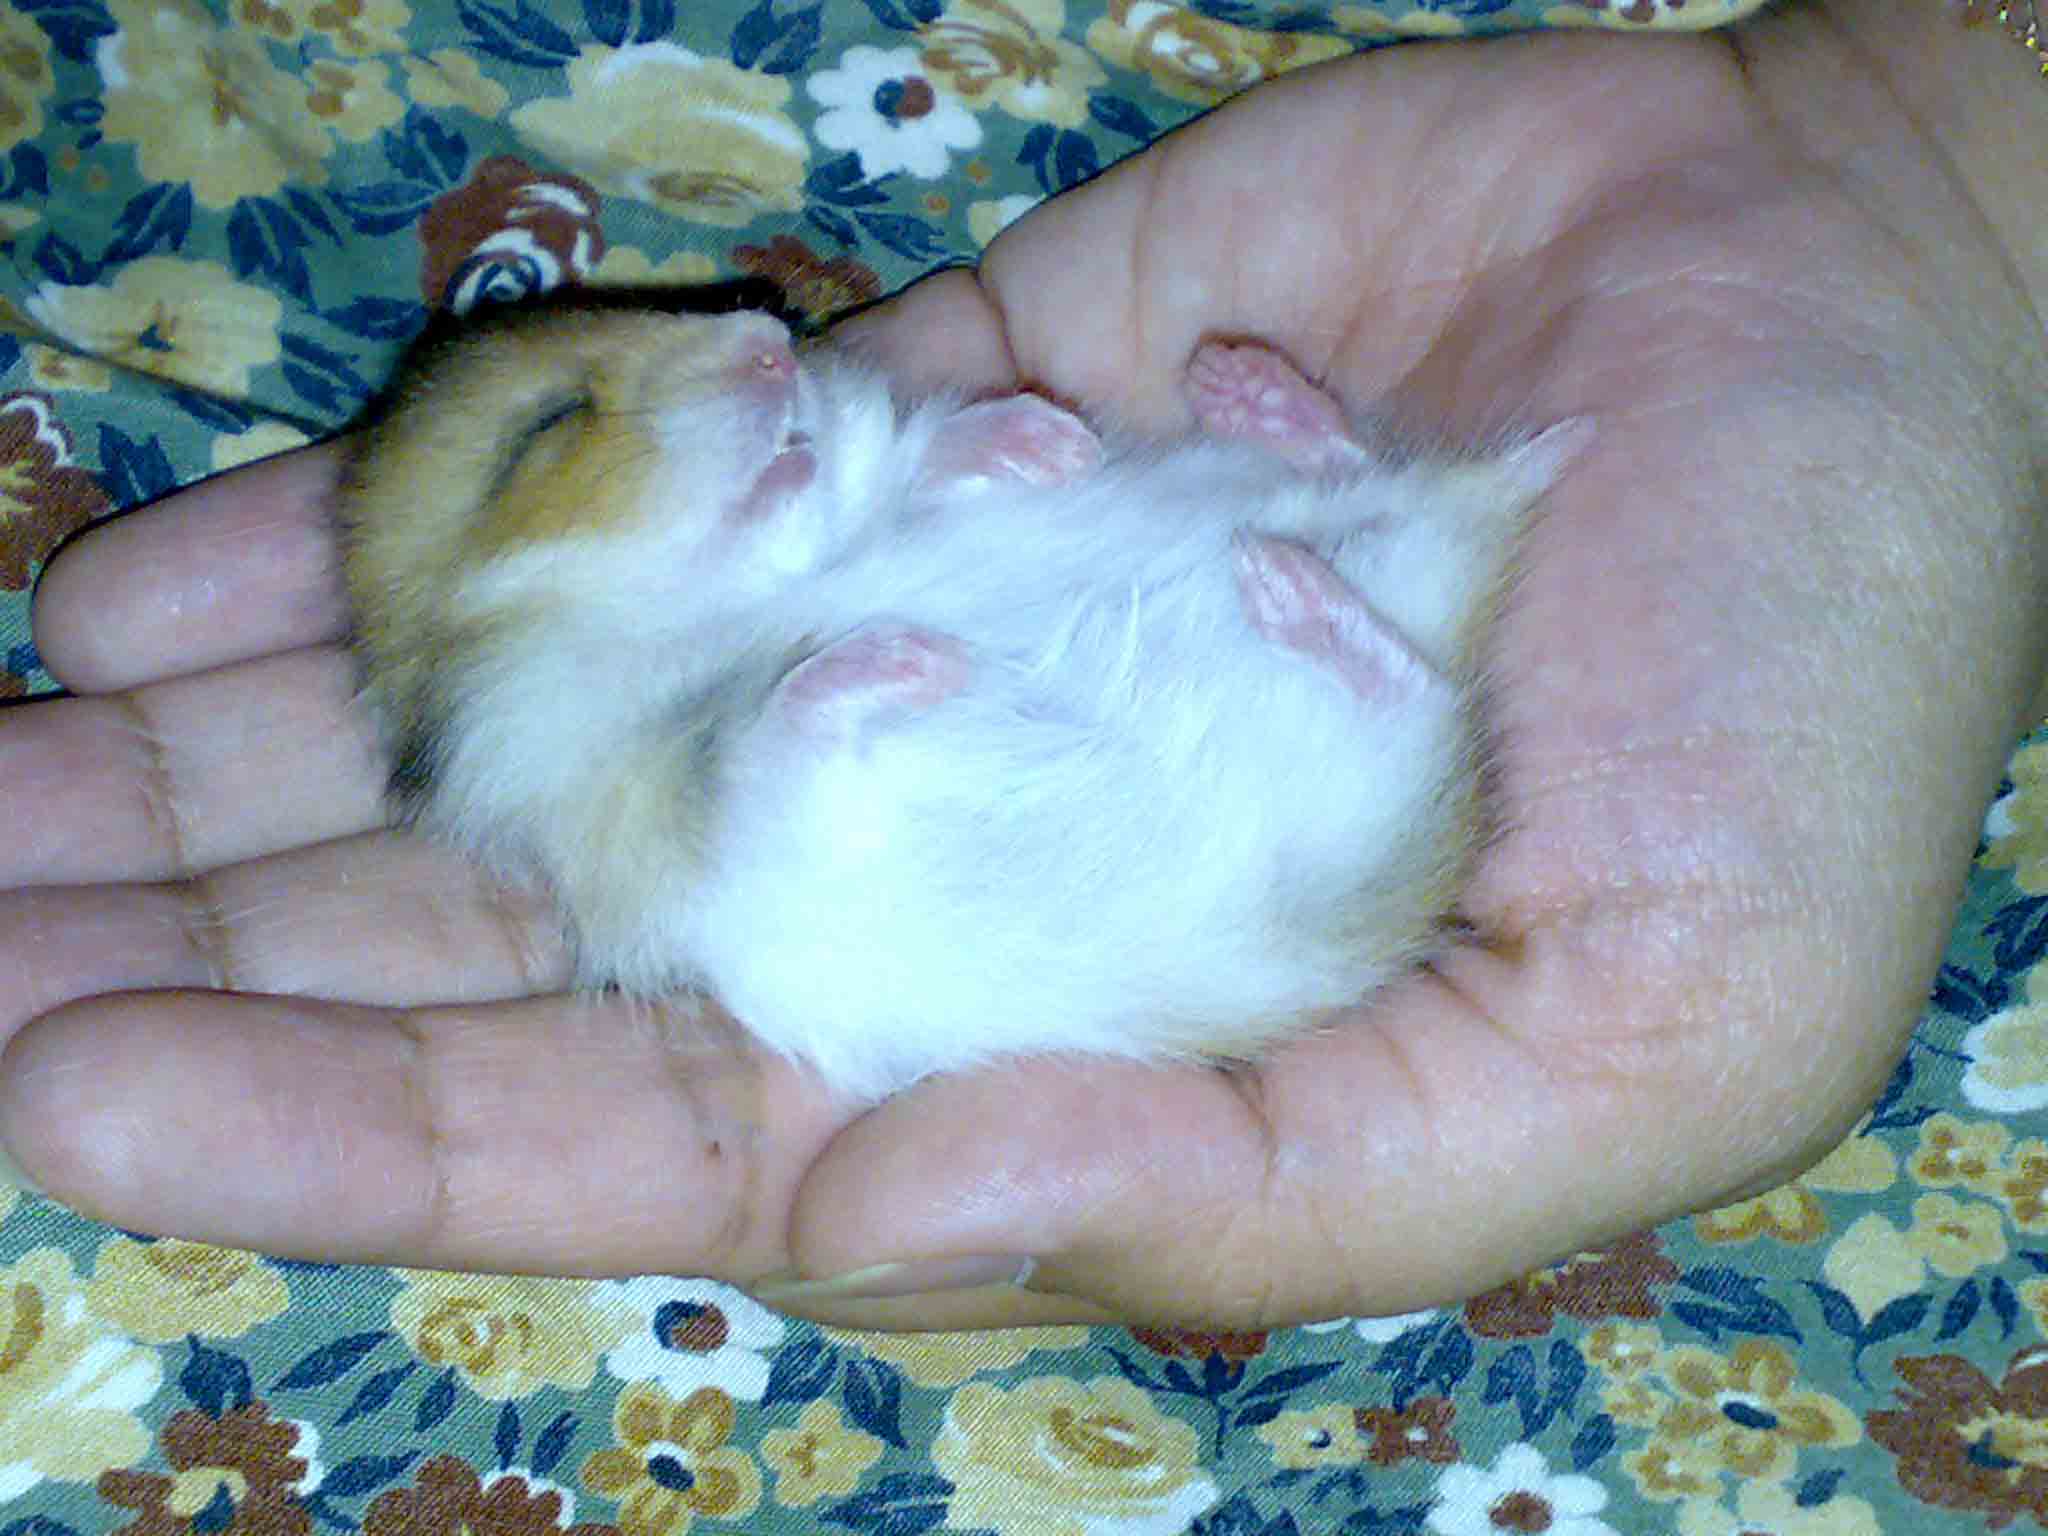 http://hamster.persiangig.com/1001.jpg